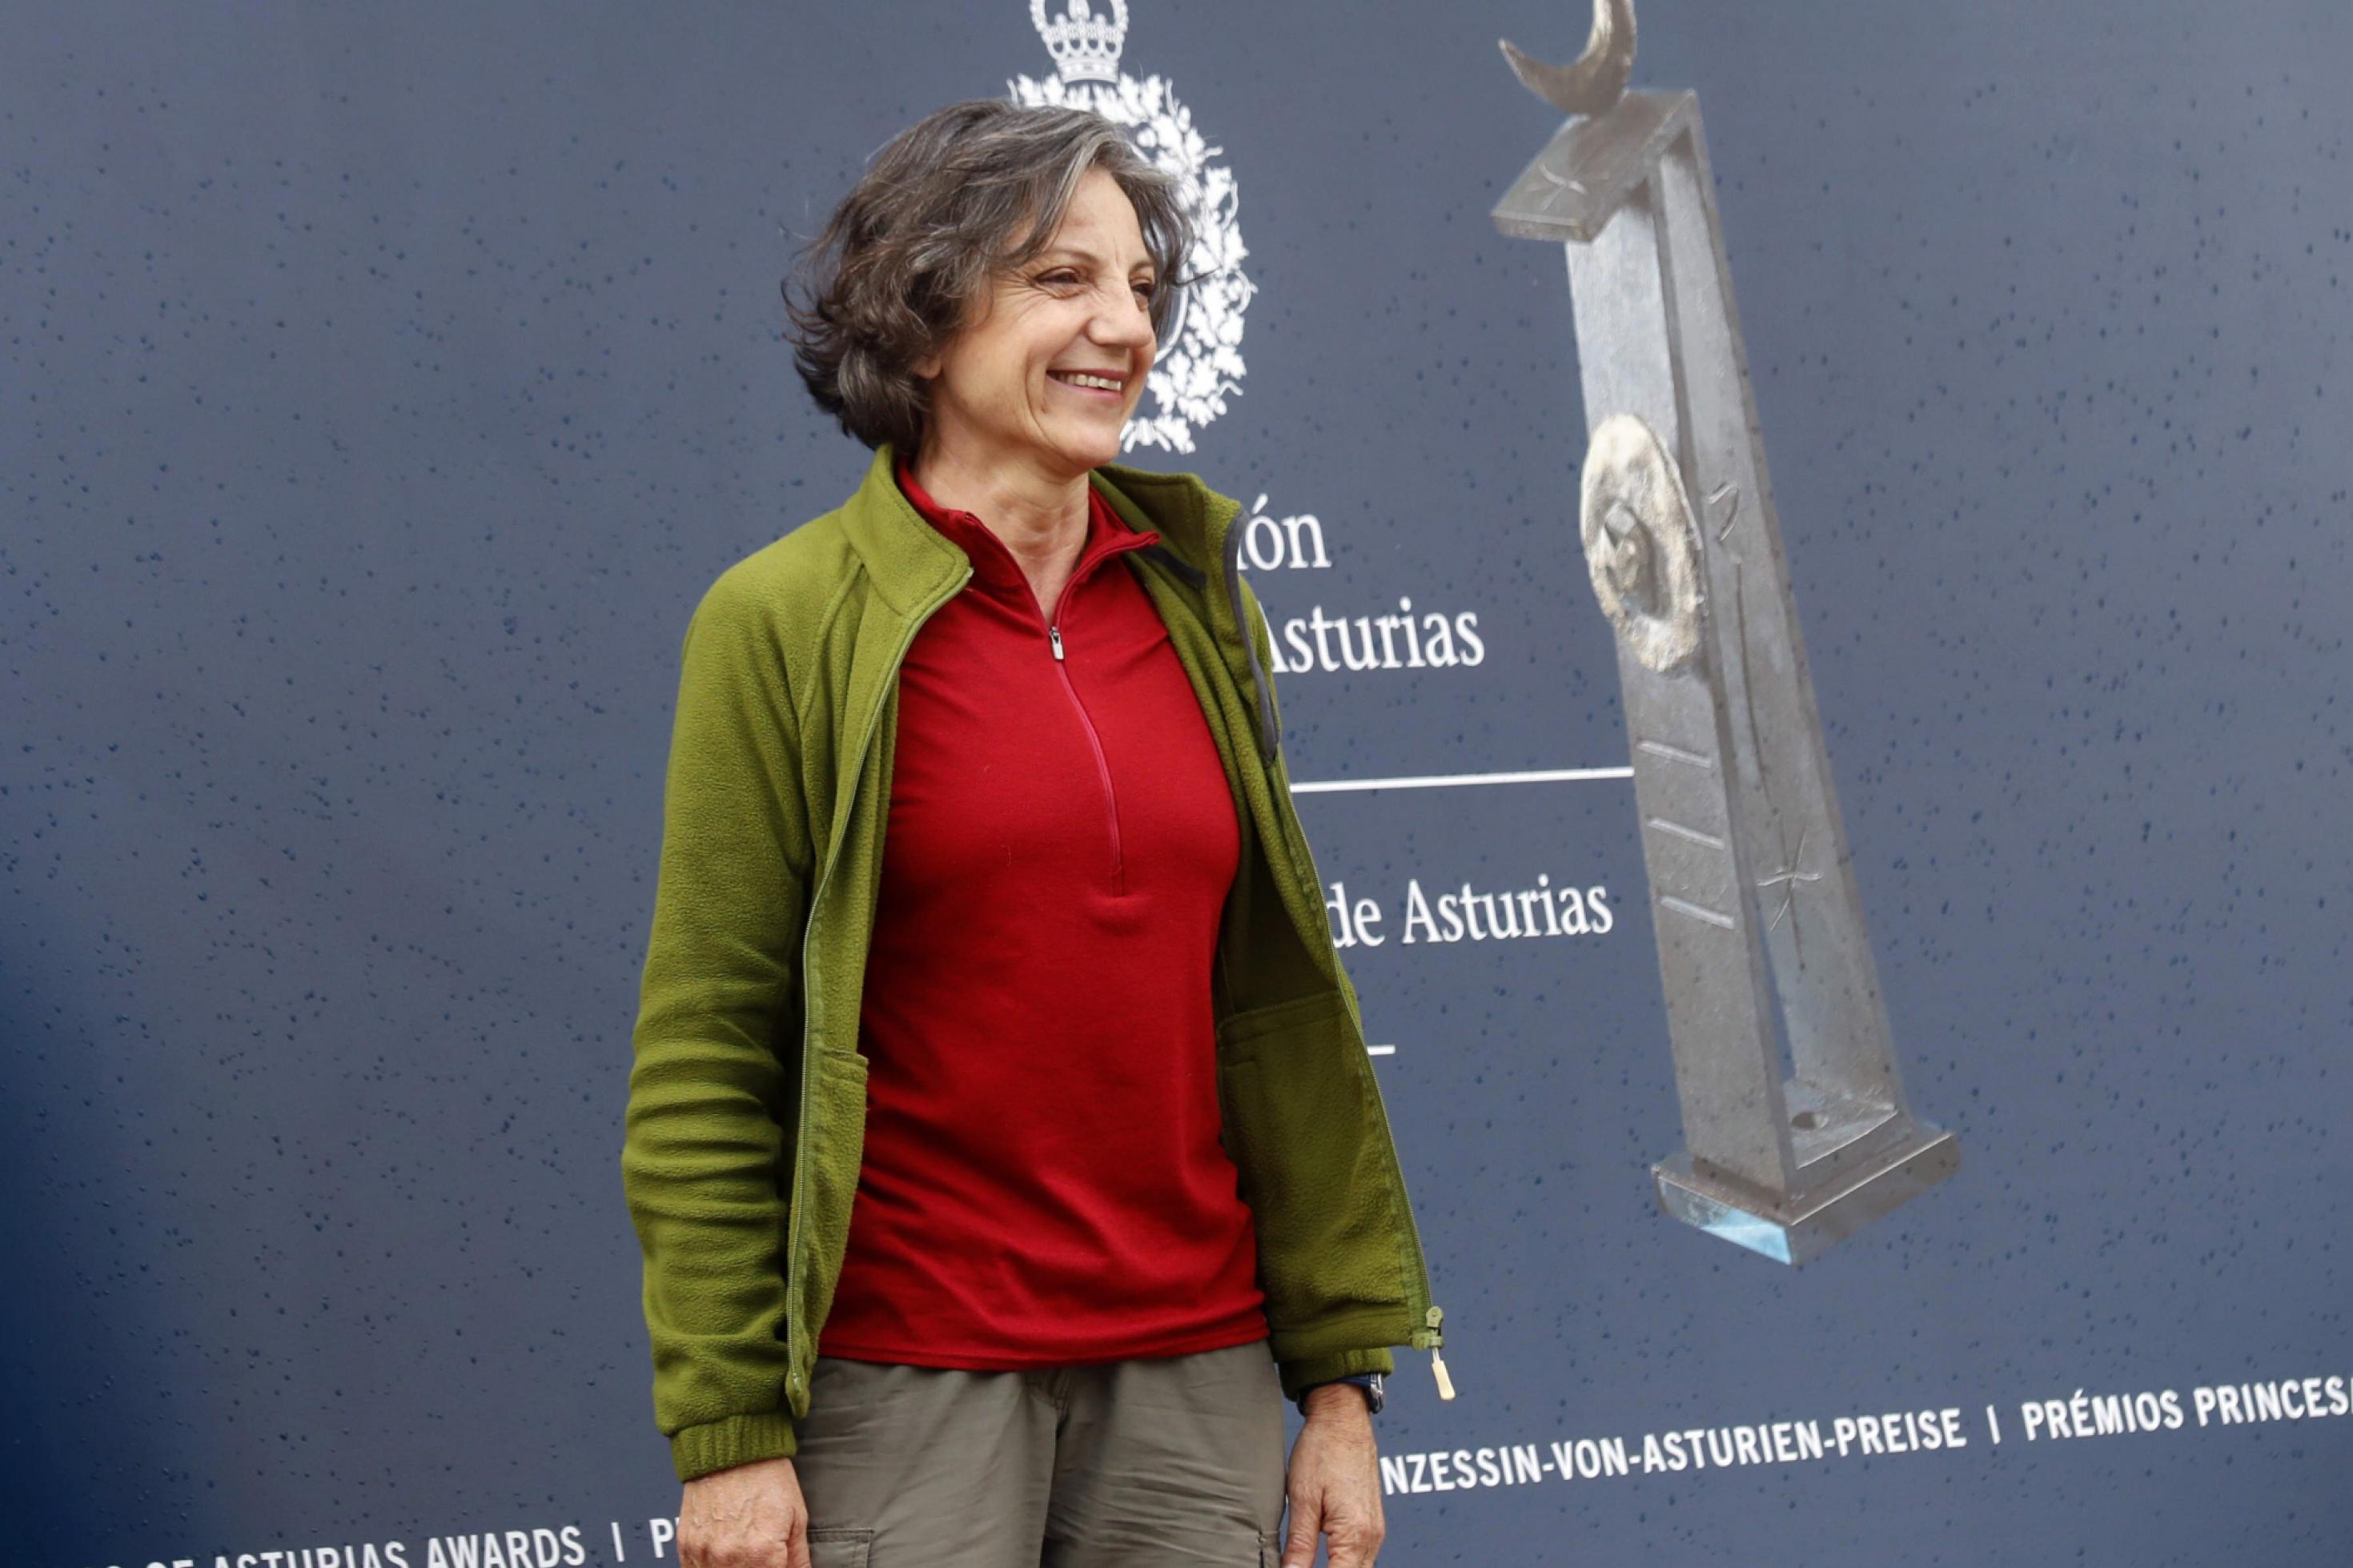 Eine mittelalte Frau mit lockigen grauen Haaren und legerer Kleidung steht vor einer grauen Wand und lacht